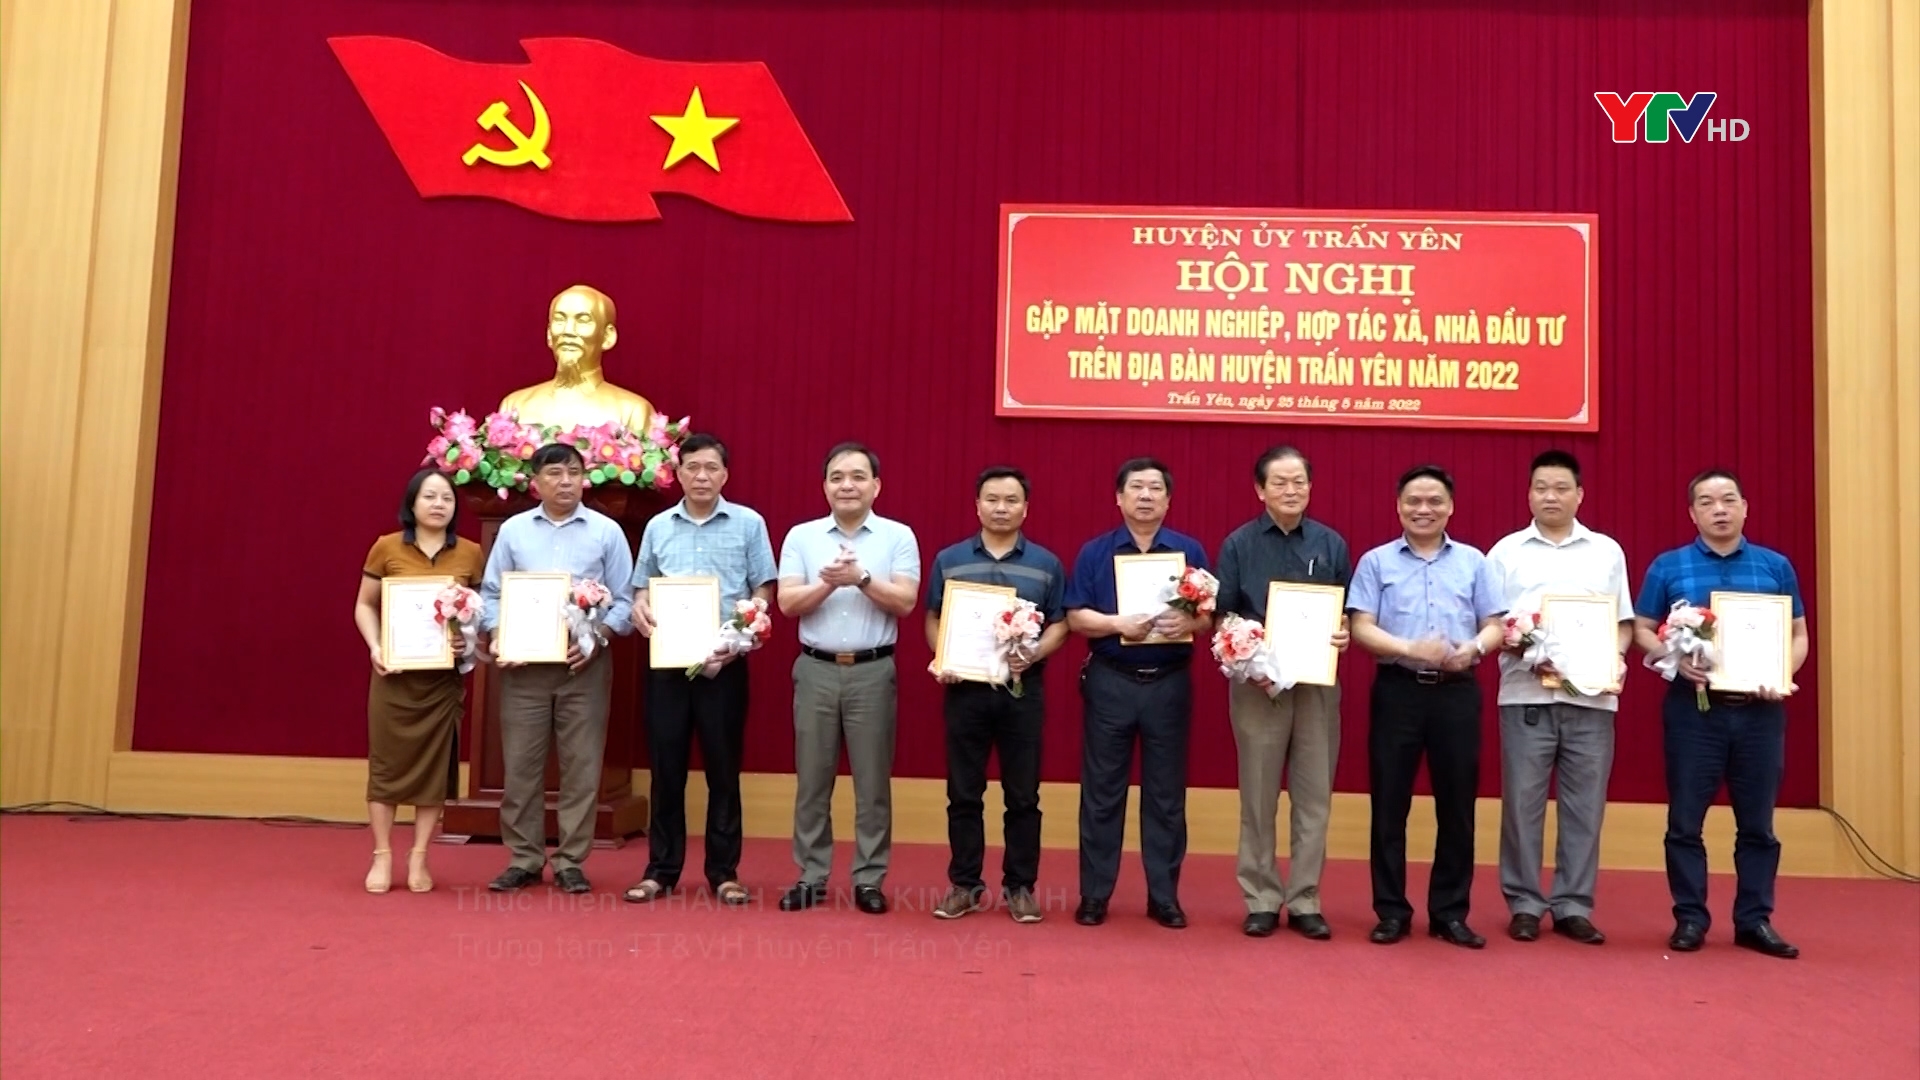 Huyện ủy Trấn Yên tổ chức gặp mặt doanh nghiệp, HTX, nhà đầu tư